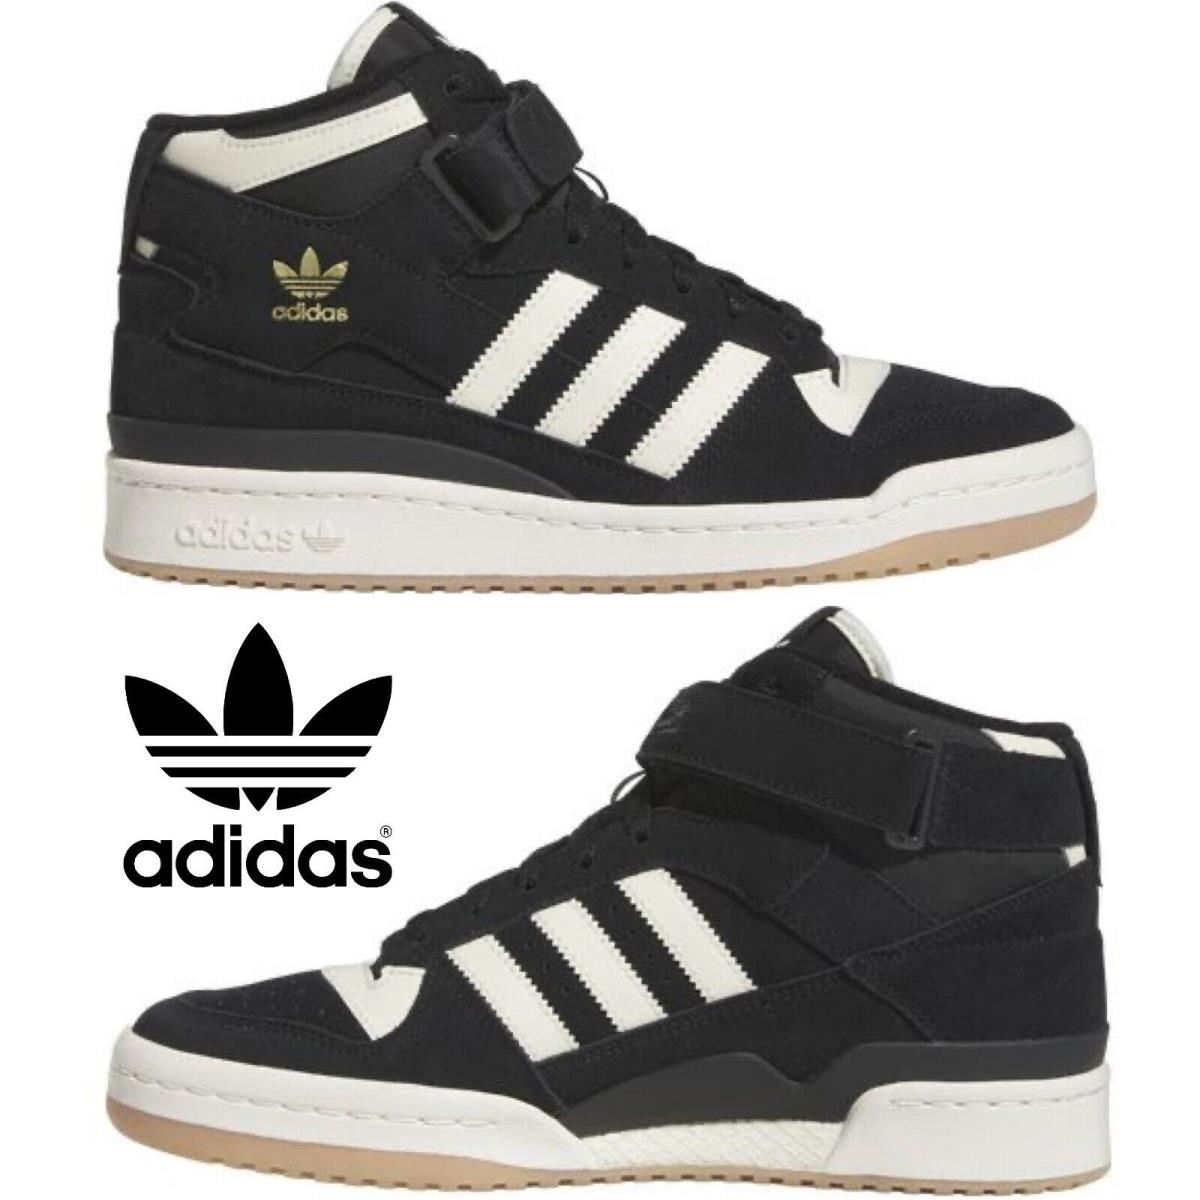 Adidas Originals Forum Mid Men`s Sneakers Comfort Casual Shoes Premium Black 9.5